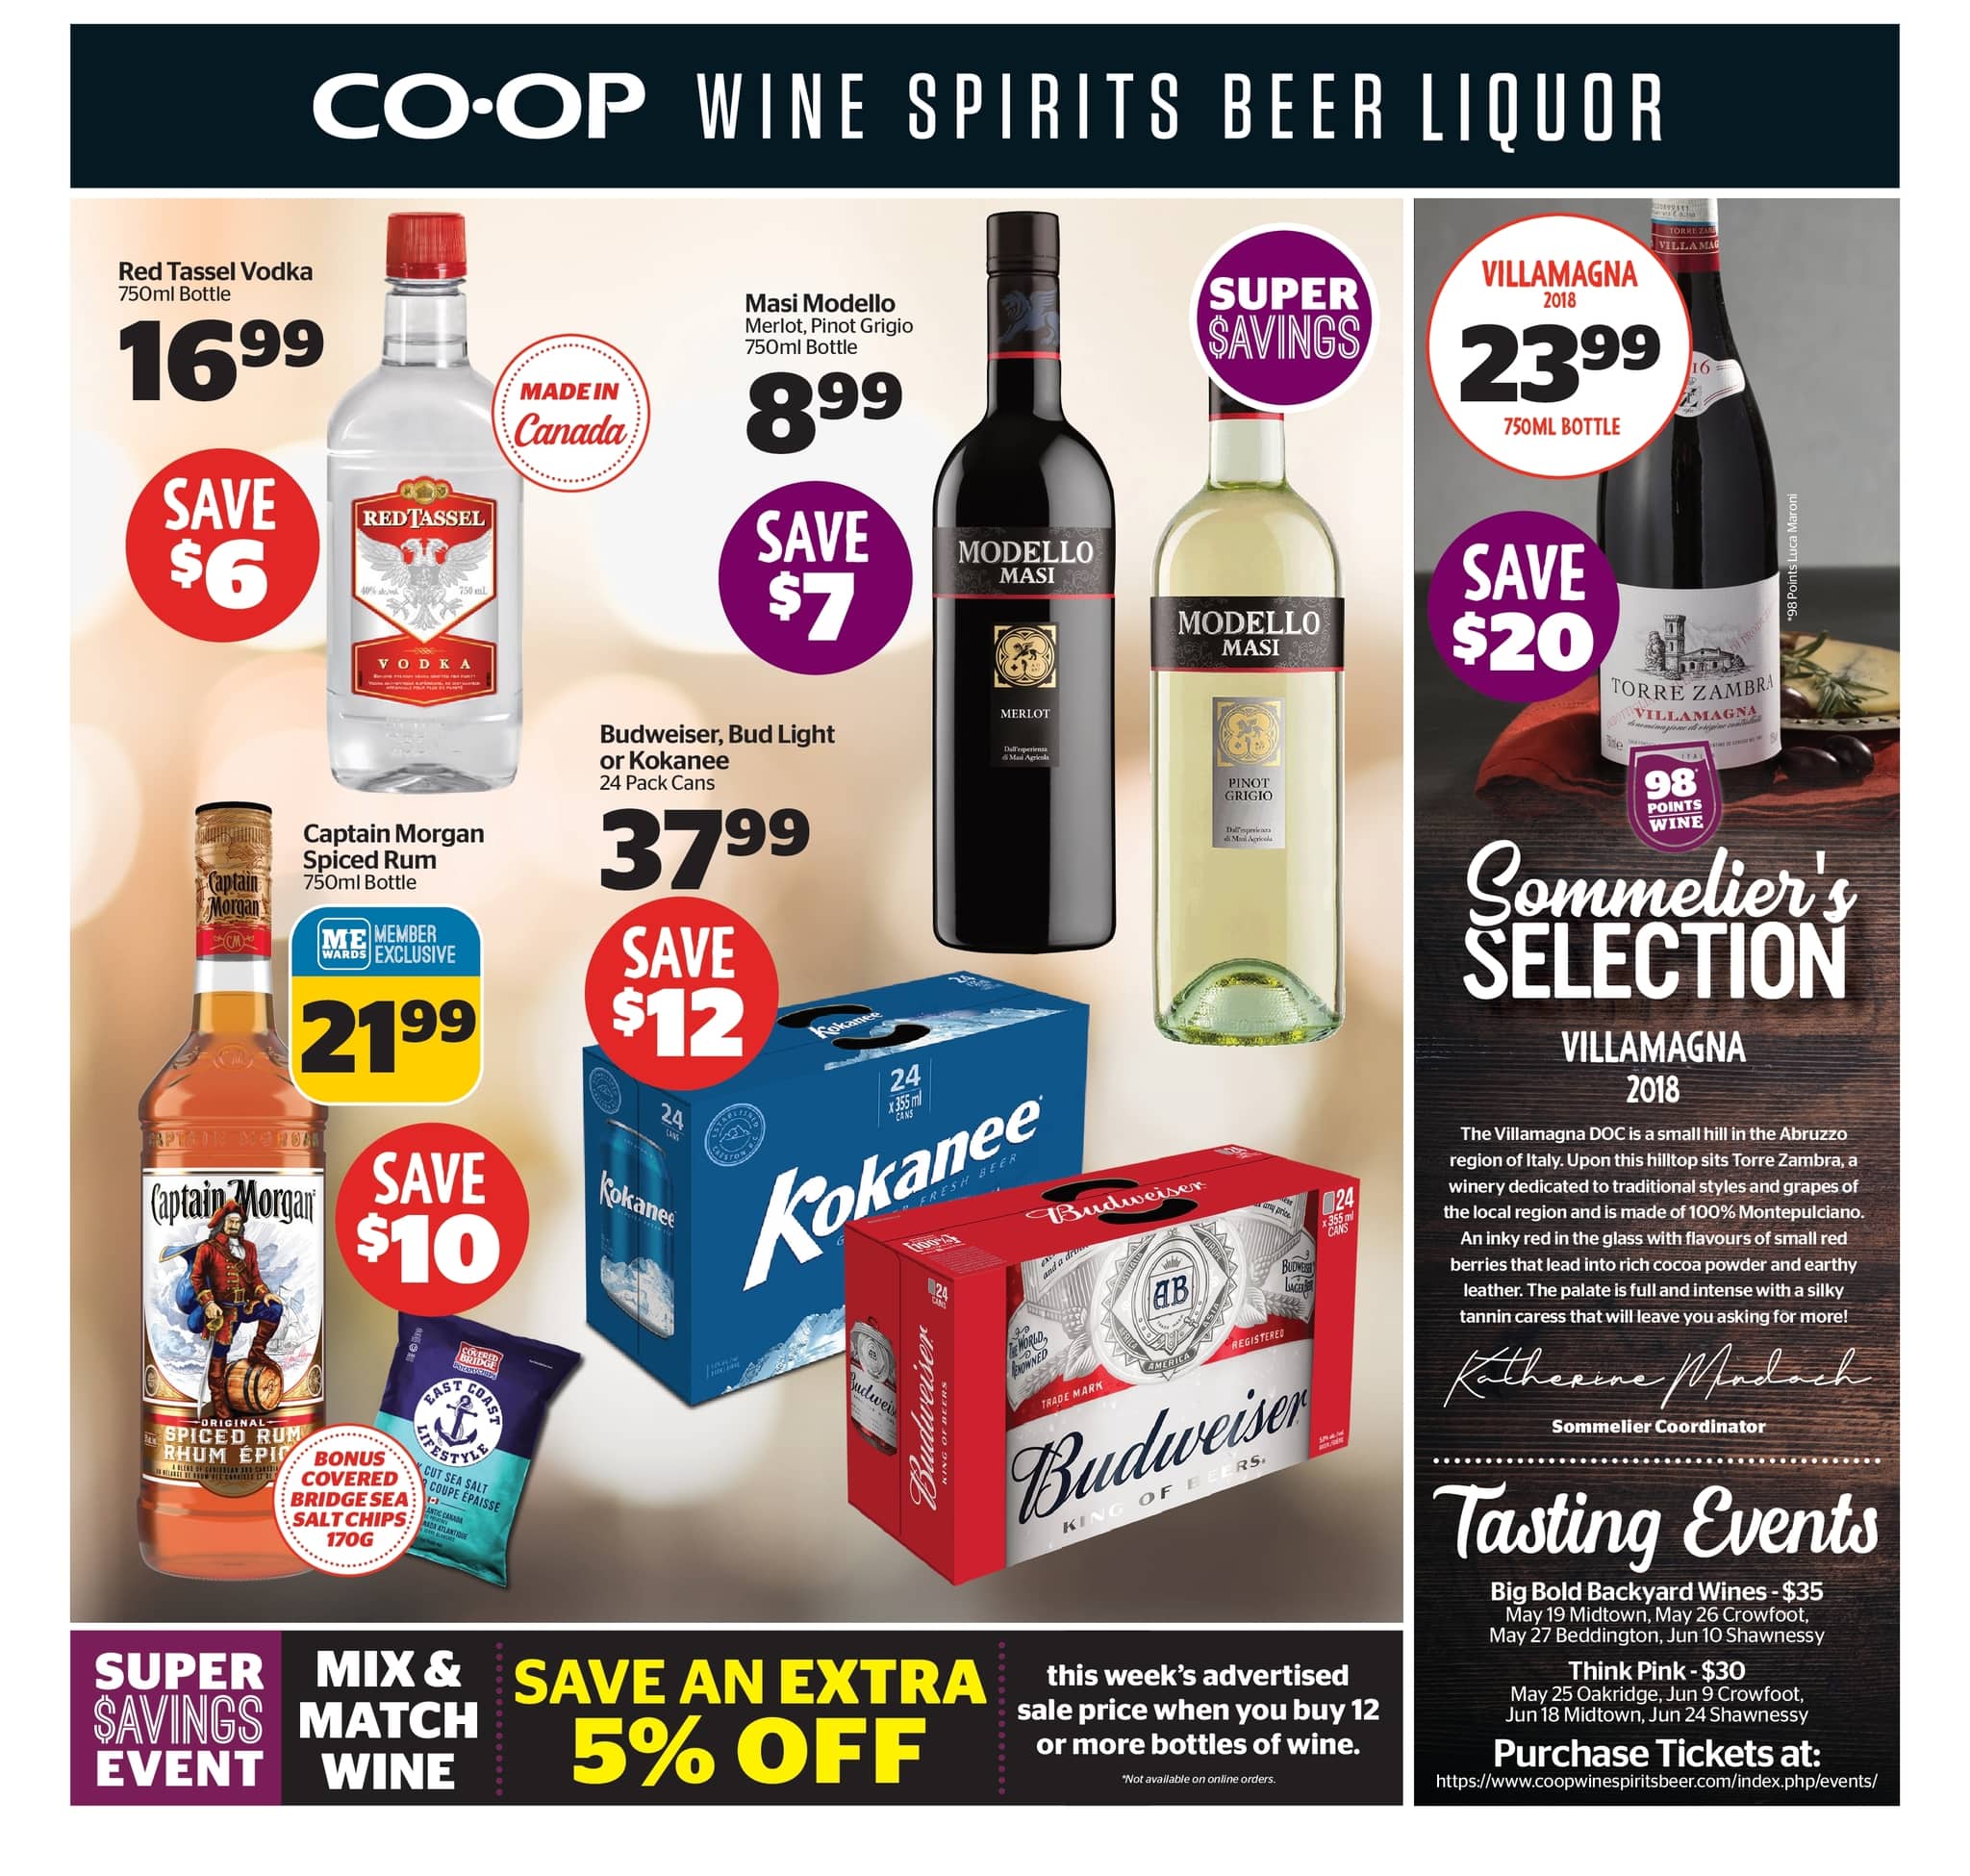 Calgary Co-op - Wine Spirits Beer